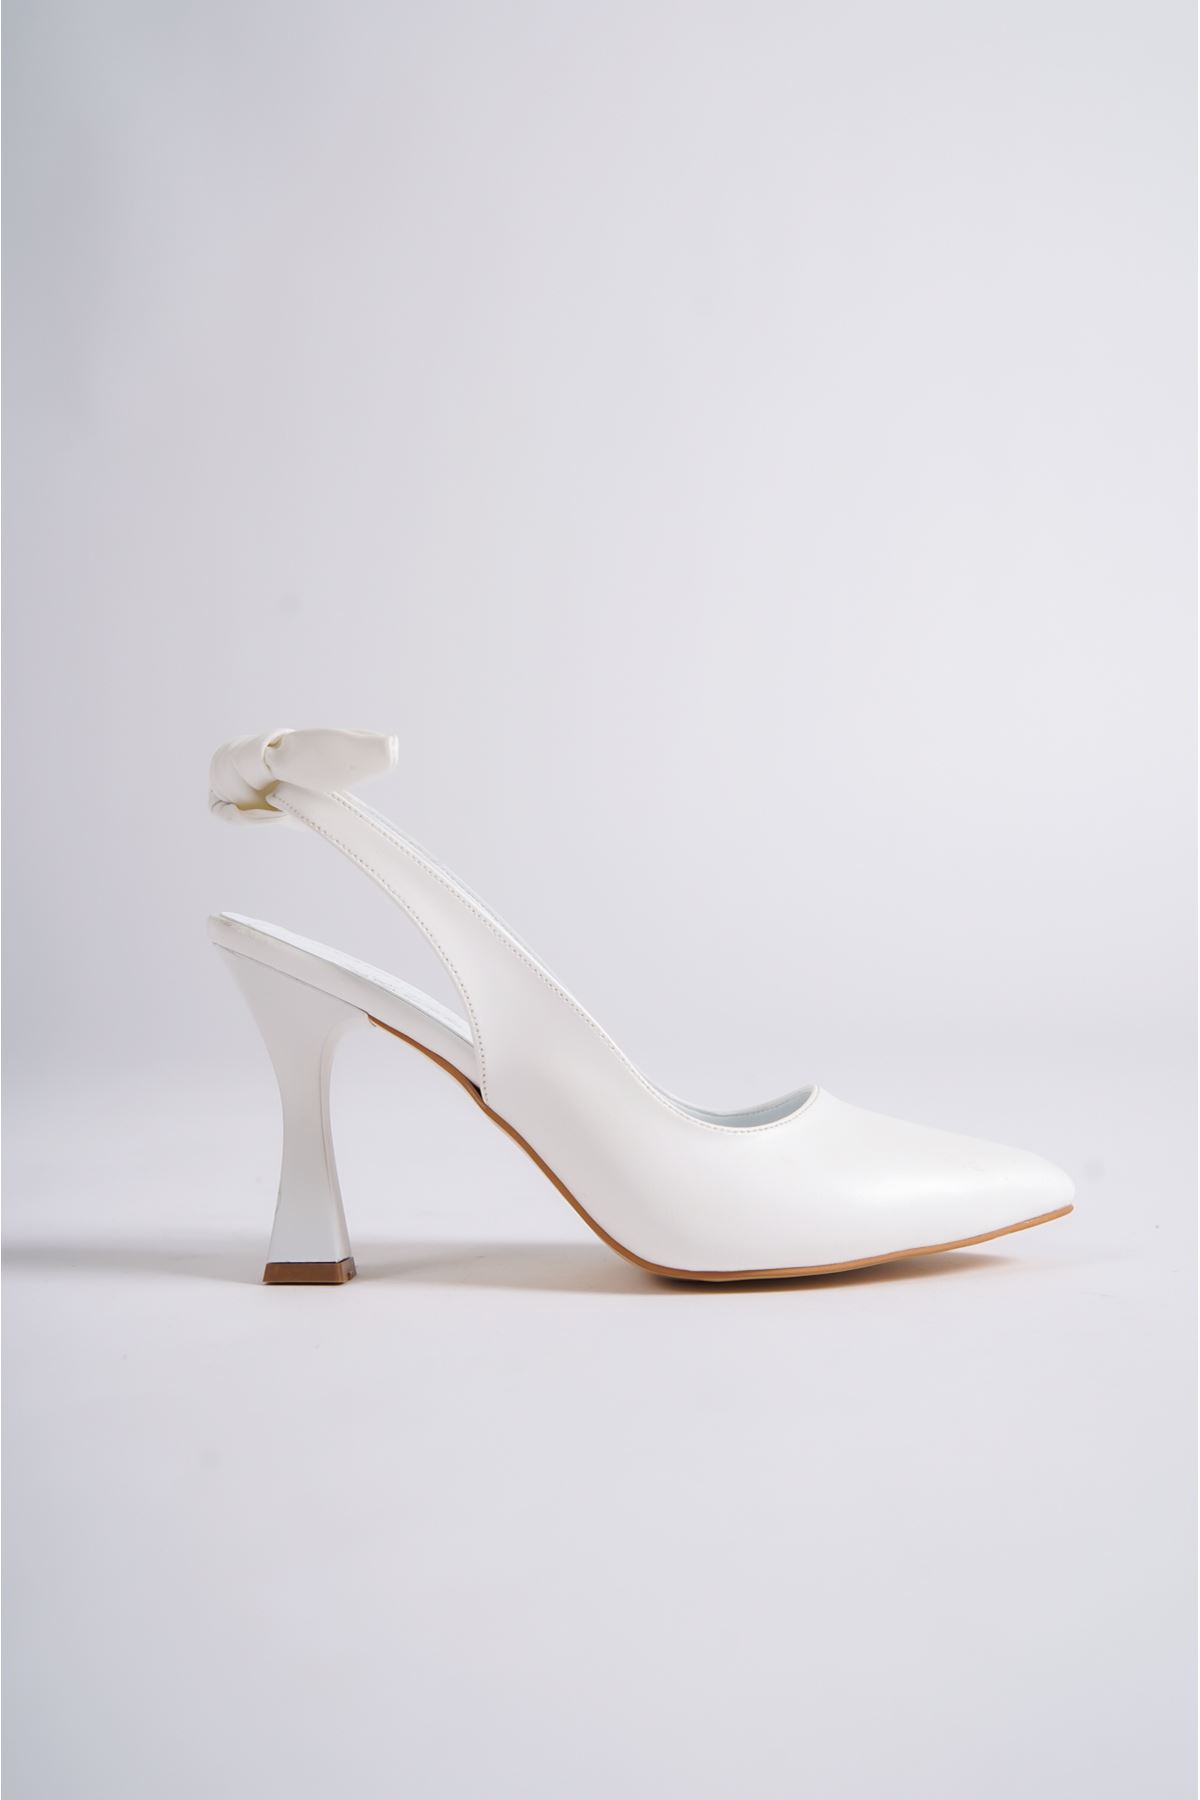 Jewel Beyaz Mat Deri Topuklu Kadın Ayakkabı